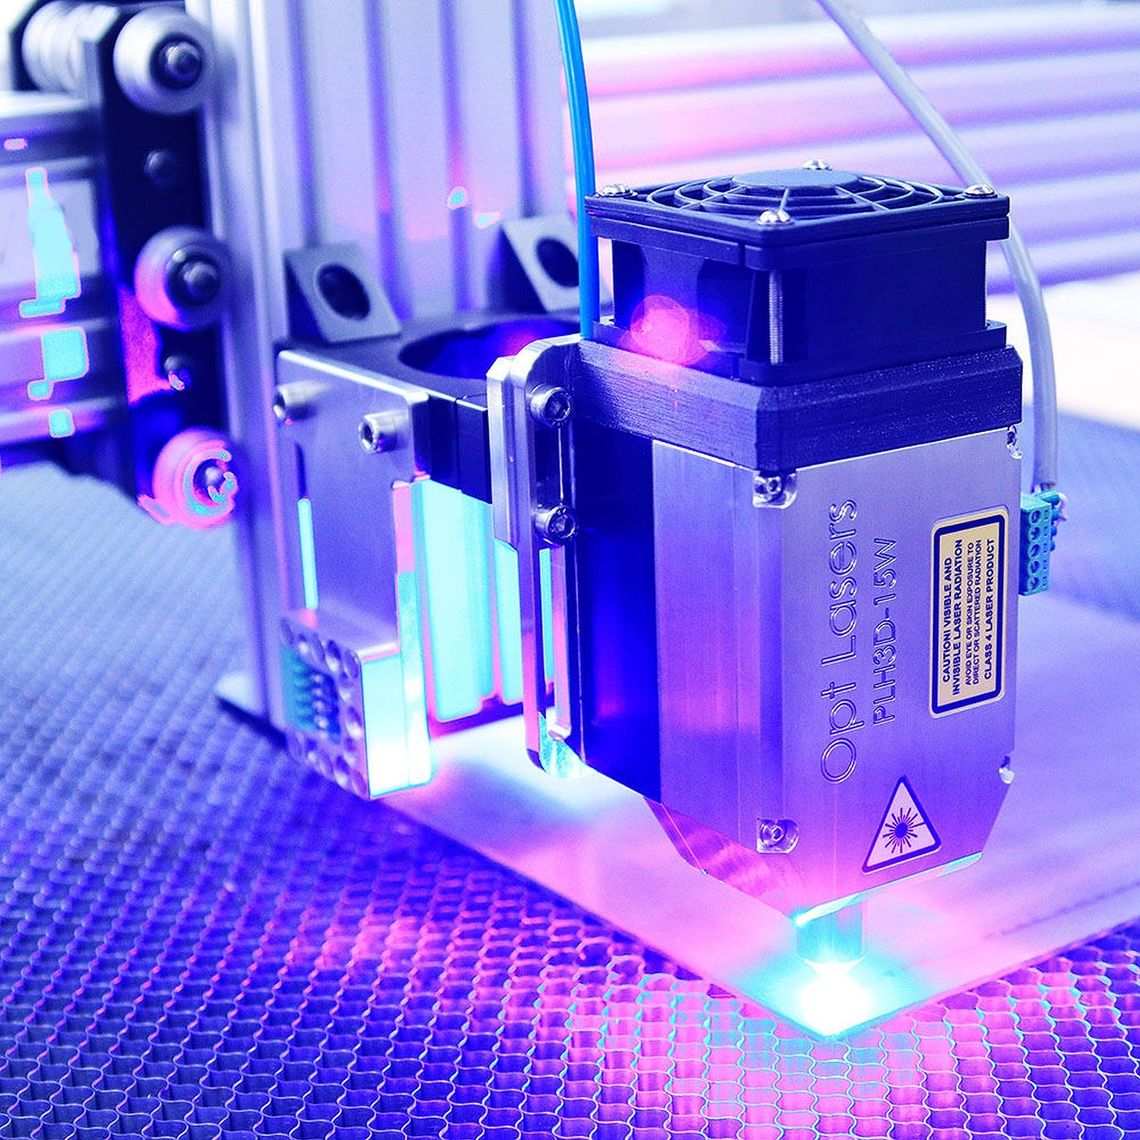 Ploter laserowy to urządzenie do zadań specjalnych. Dzięki niemu obróbka metali stanie się przyjemnością